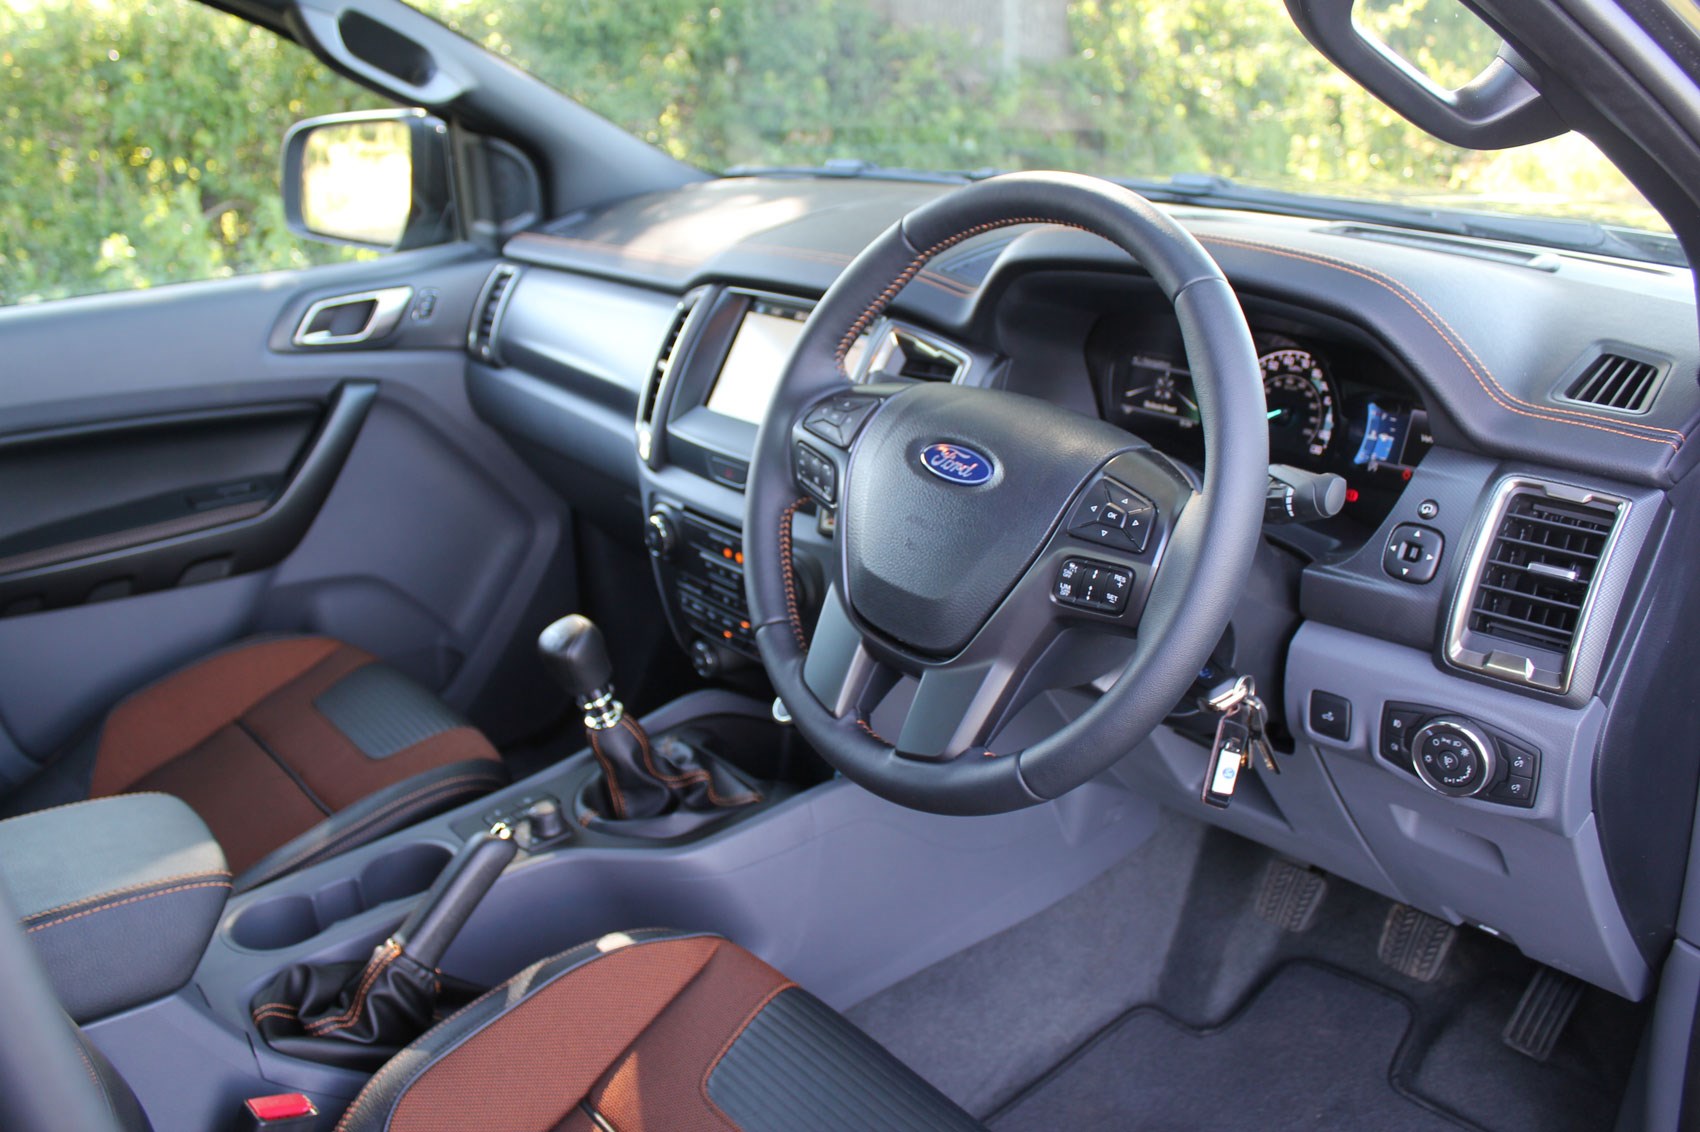 Ford Ranger Wildtrak Euro 6 review - cab interior